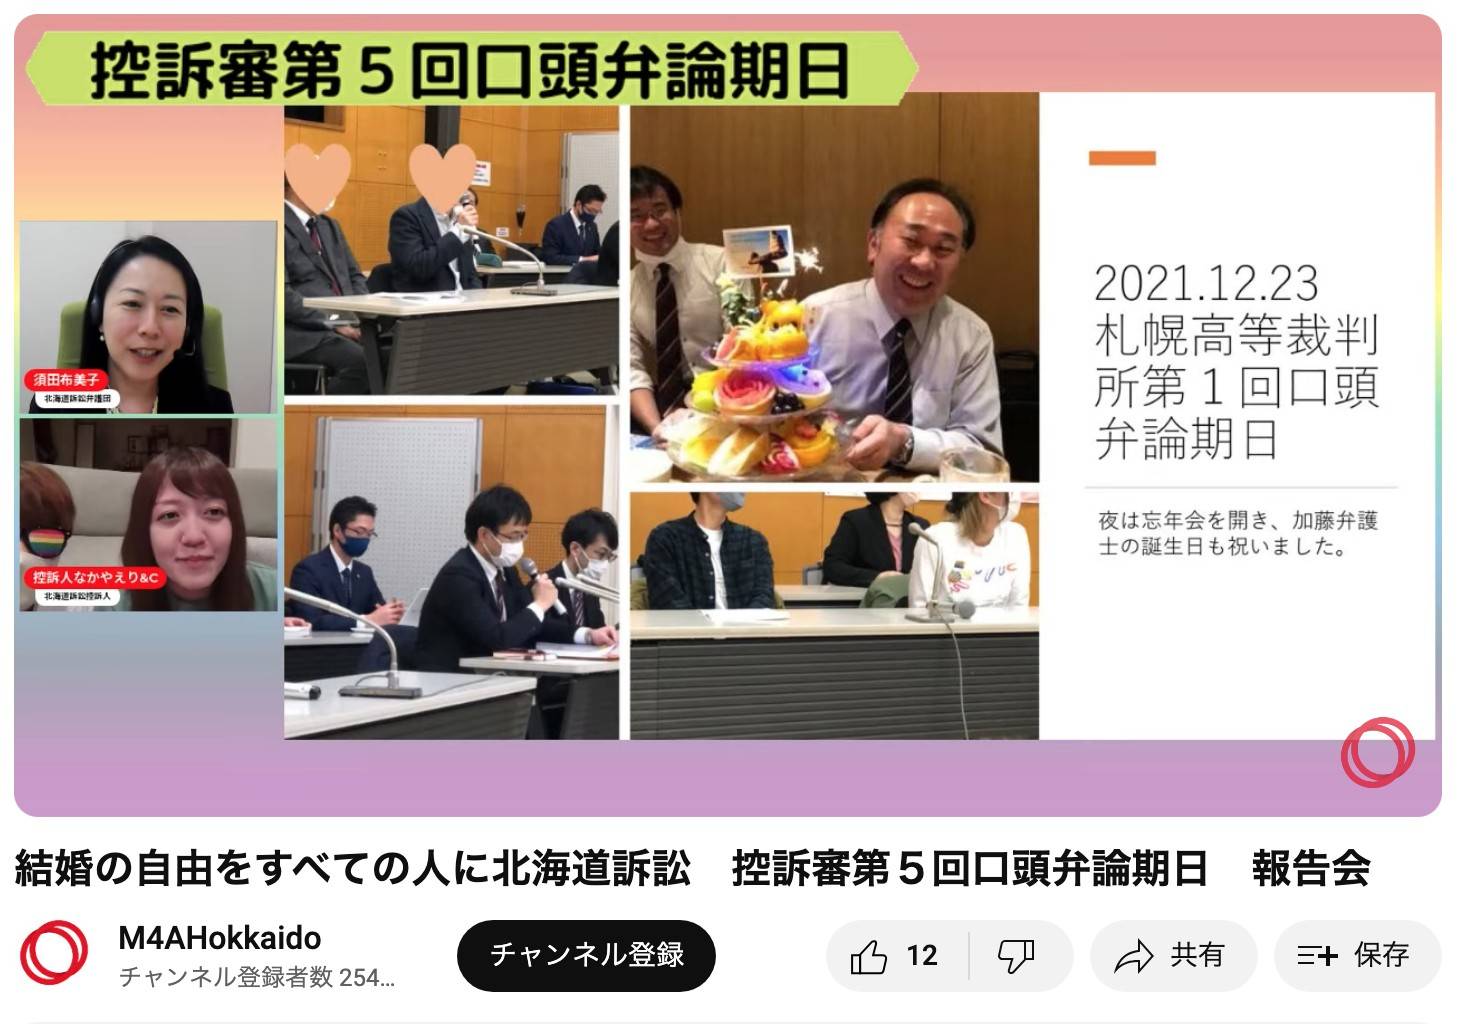 配信報告の様子。YouTubeの画面に、「結婚の自由をすべての人に」北海道訴訟の控訴審第1回口頭弁論期日が終わった後の報告集会の様子や加藤丈晴弁護士の誕生日を祝ったときの様子が写っている。